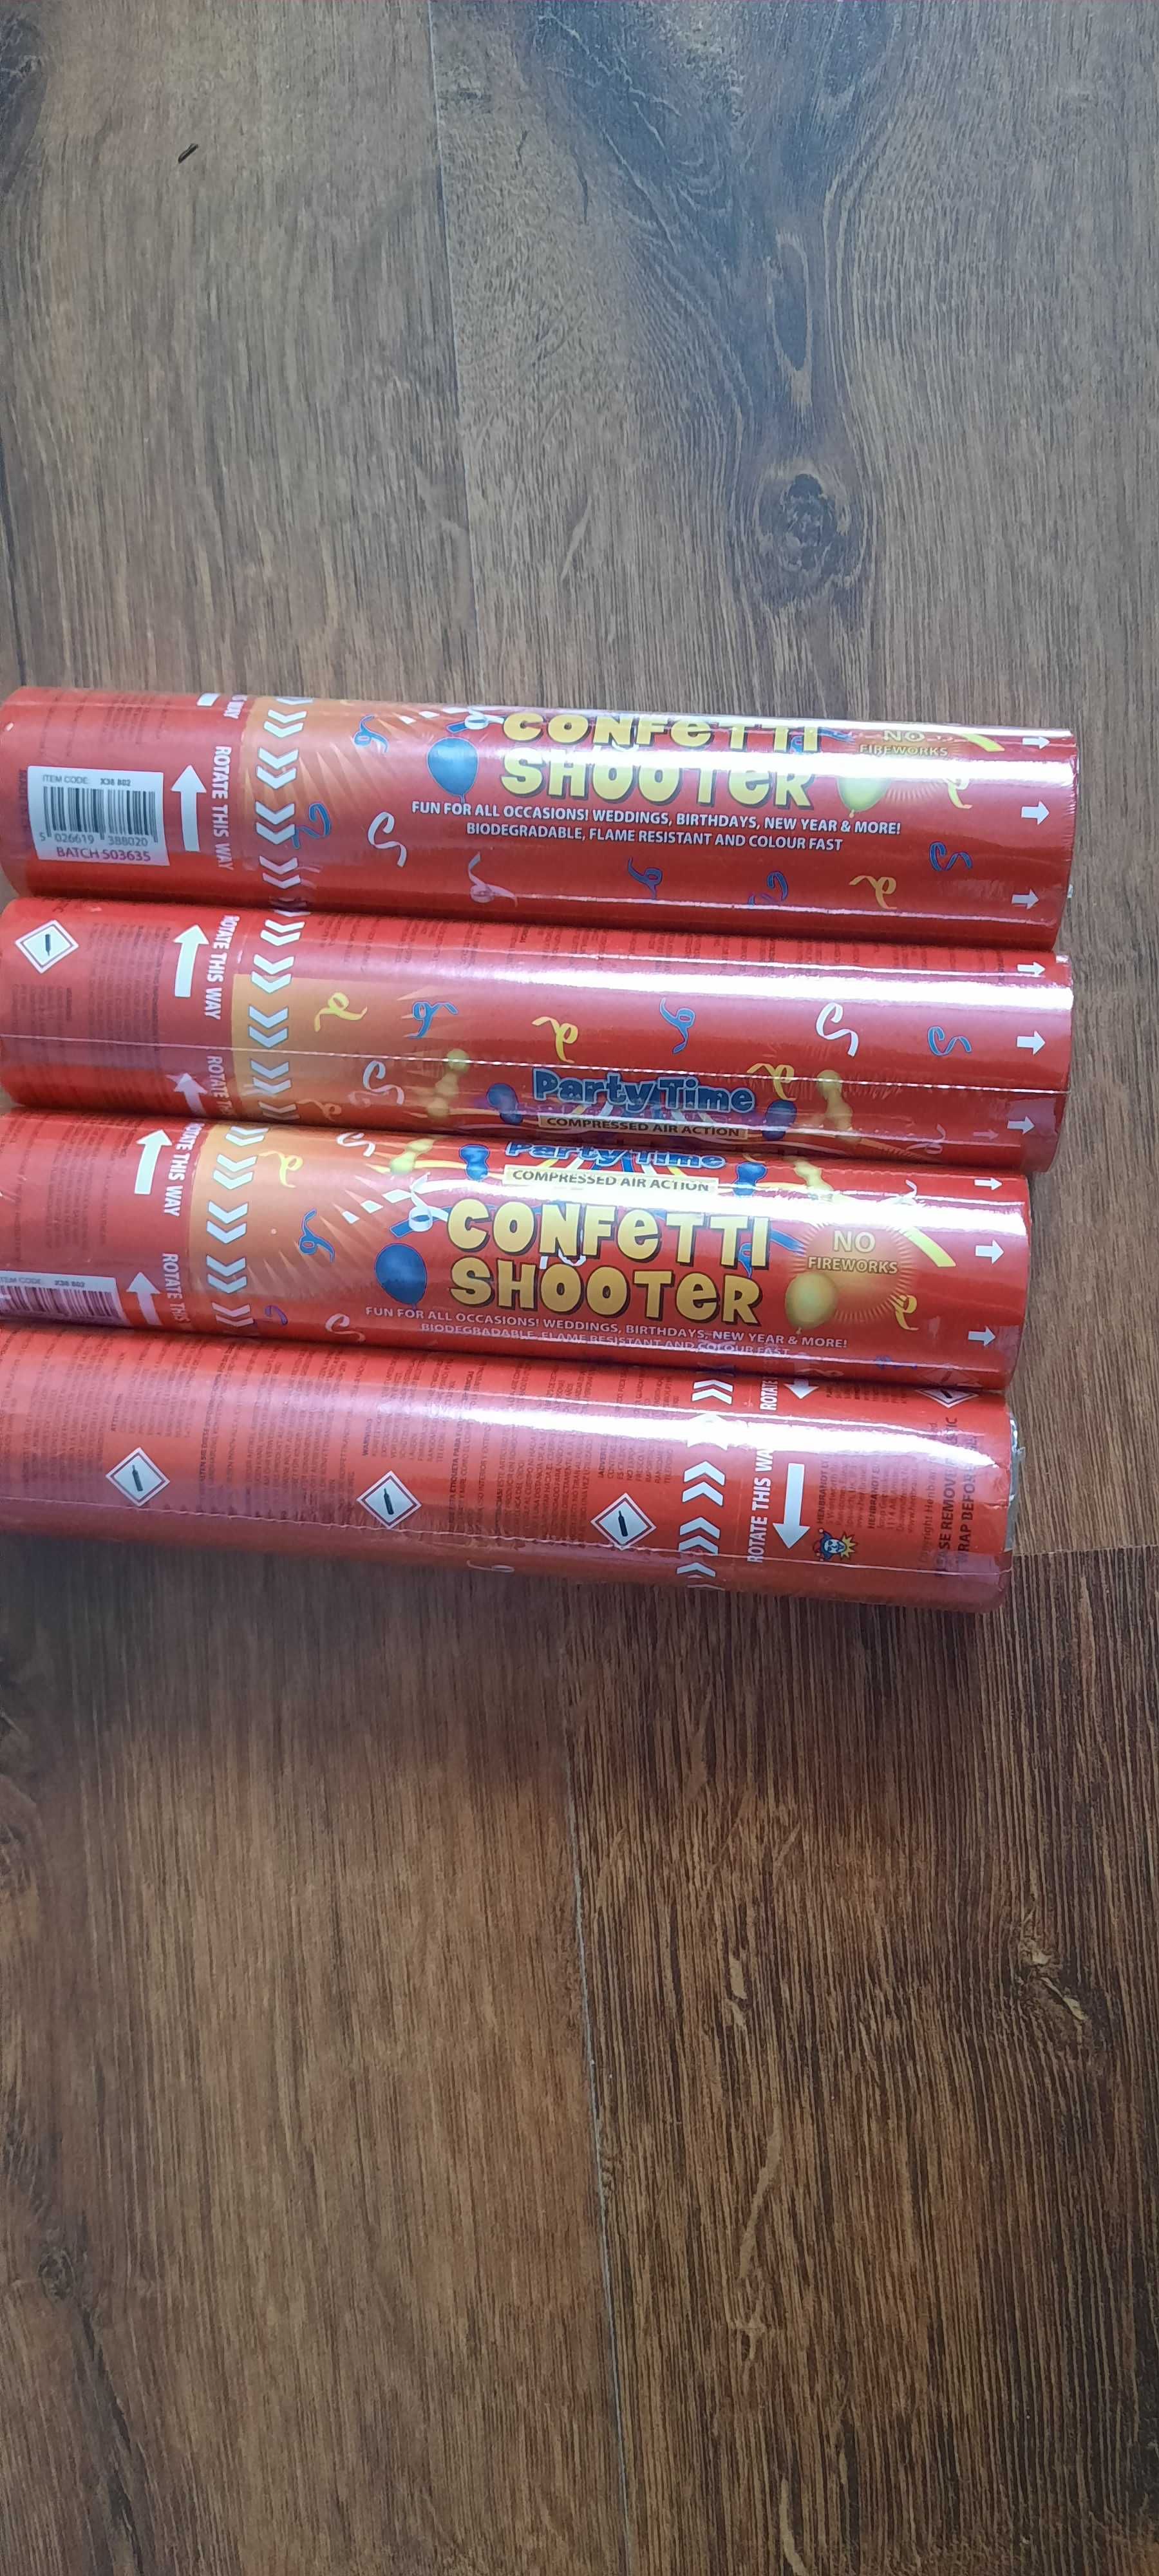 4 Confetti shooter colorat